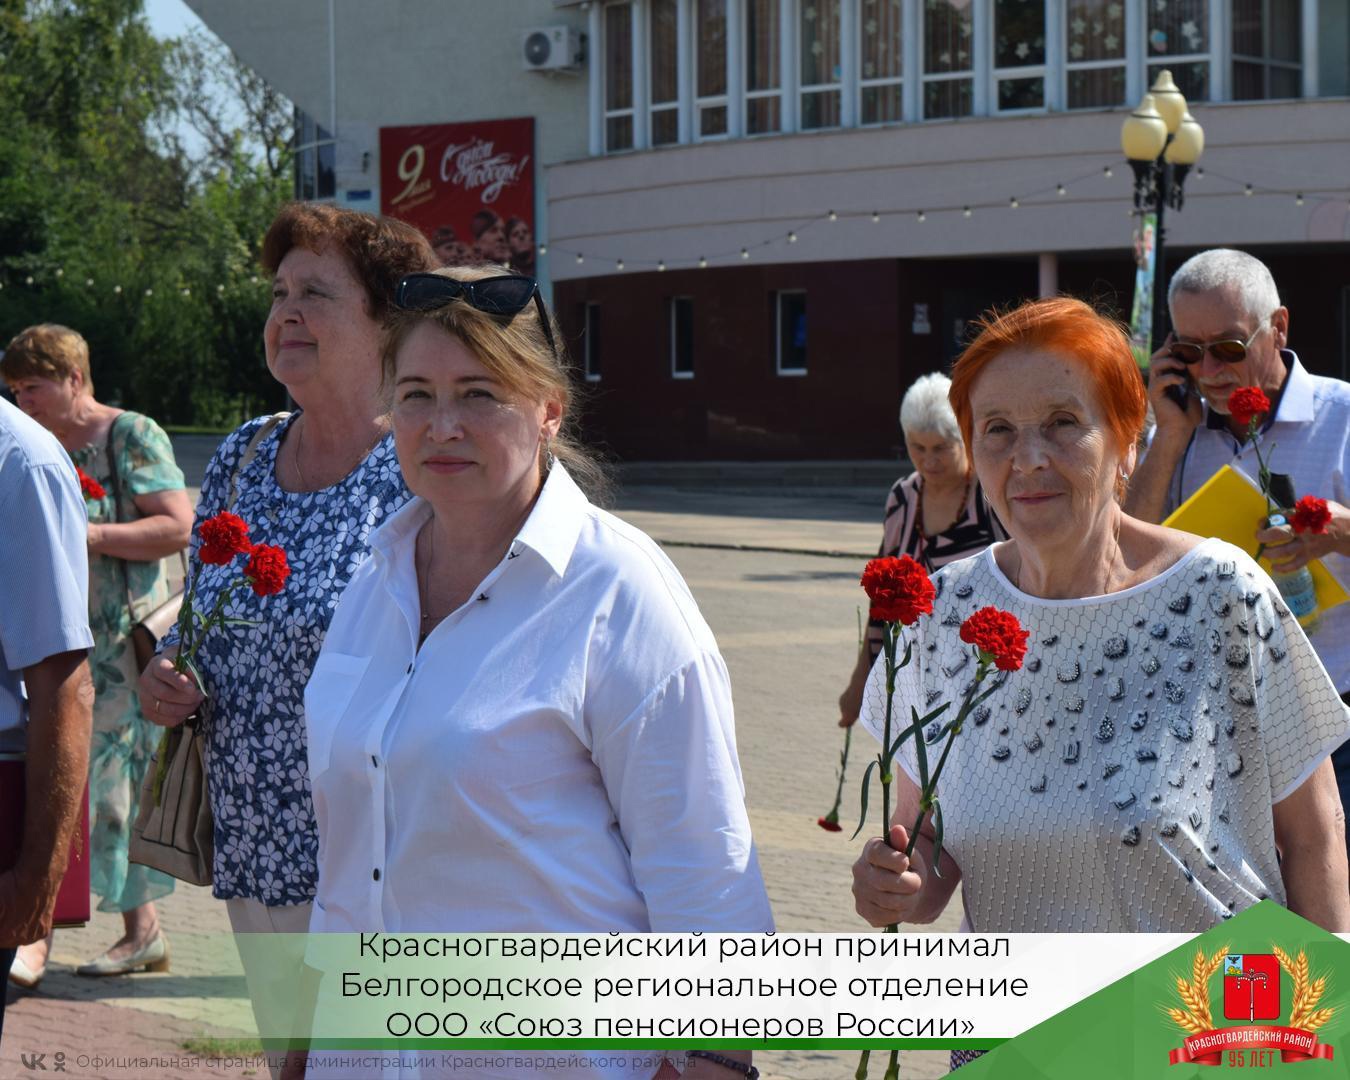 Красногвардейский район принимал Белгородское региональное отделение ООО «Союз пенсионеров России».